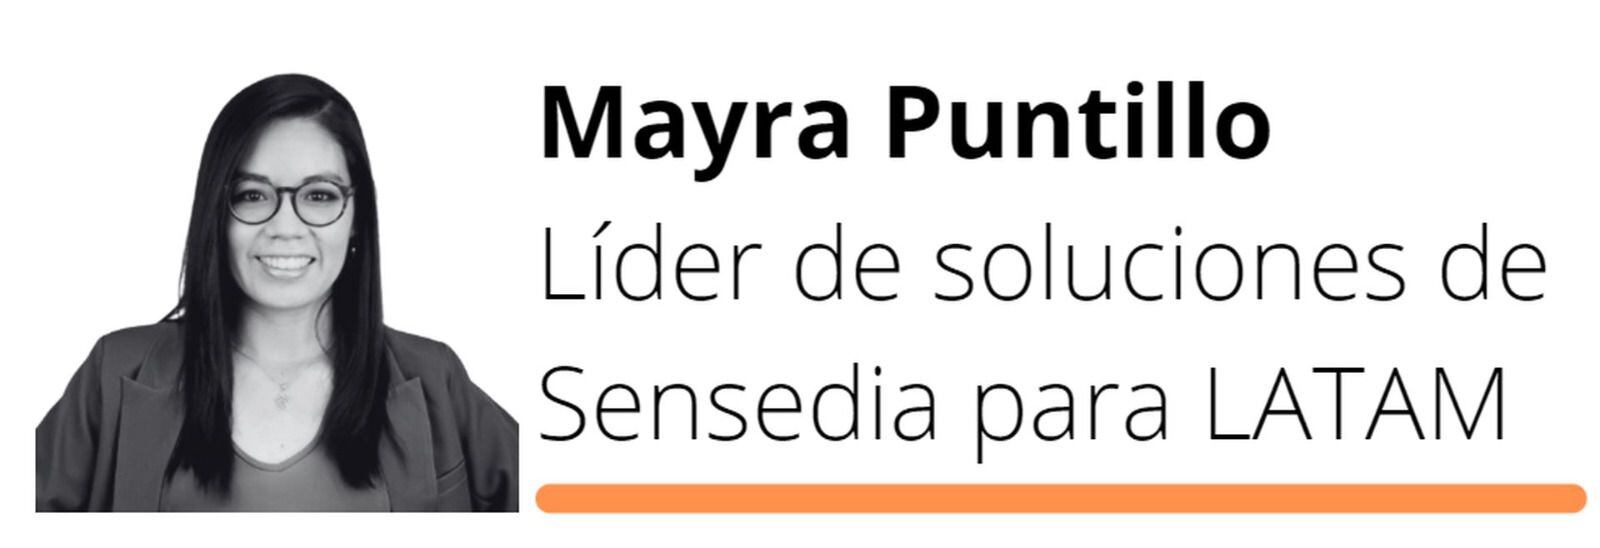 Mayra Puntillo